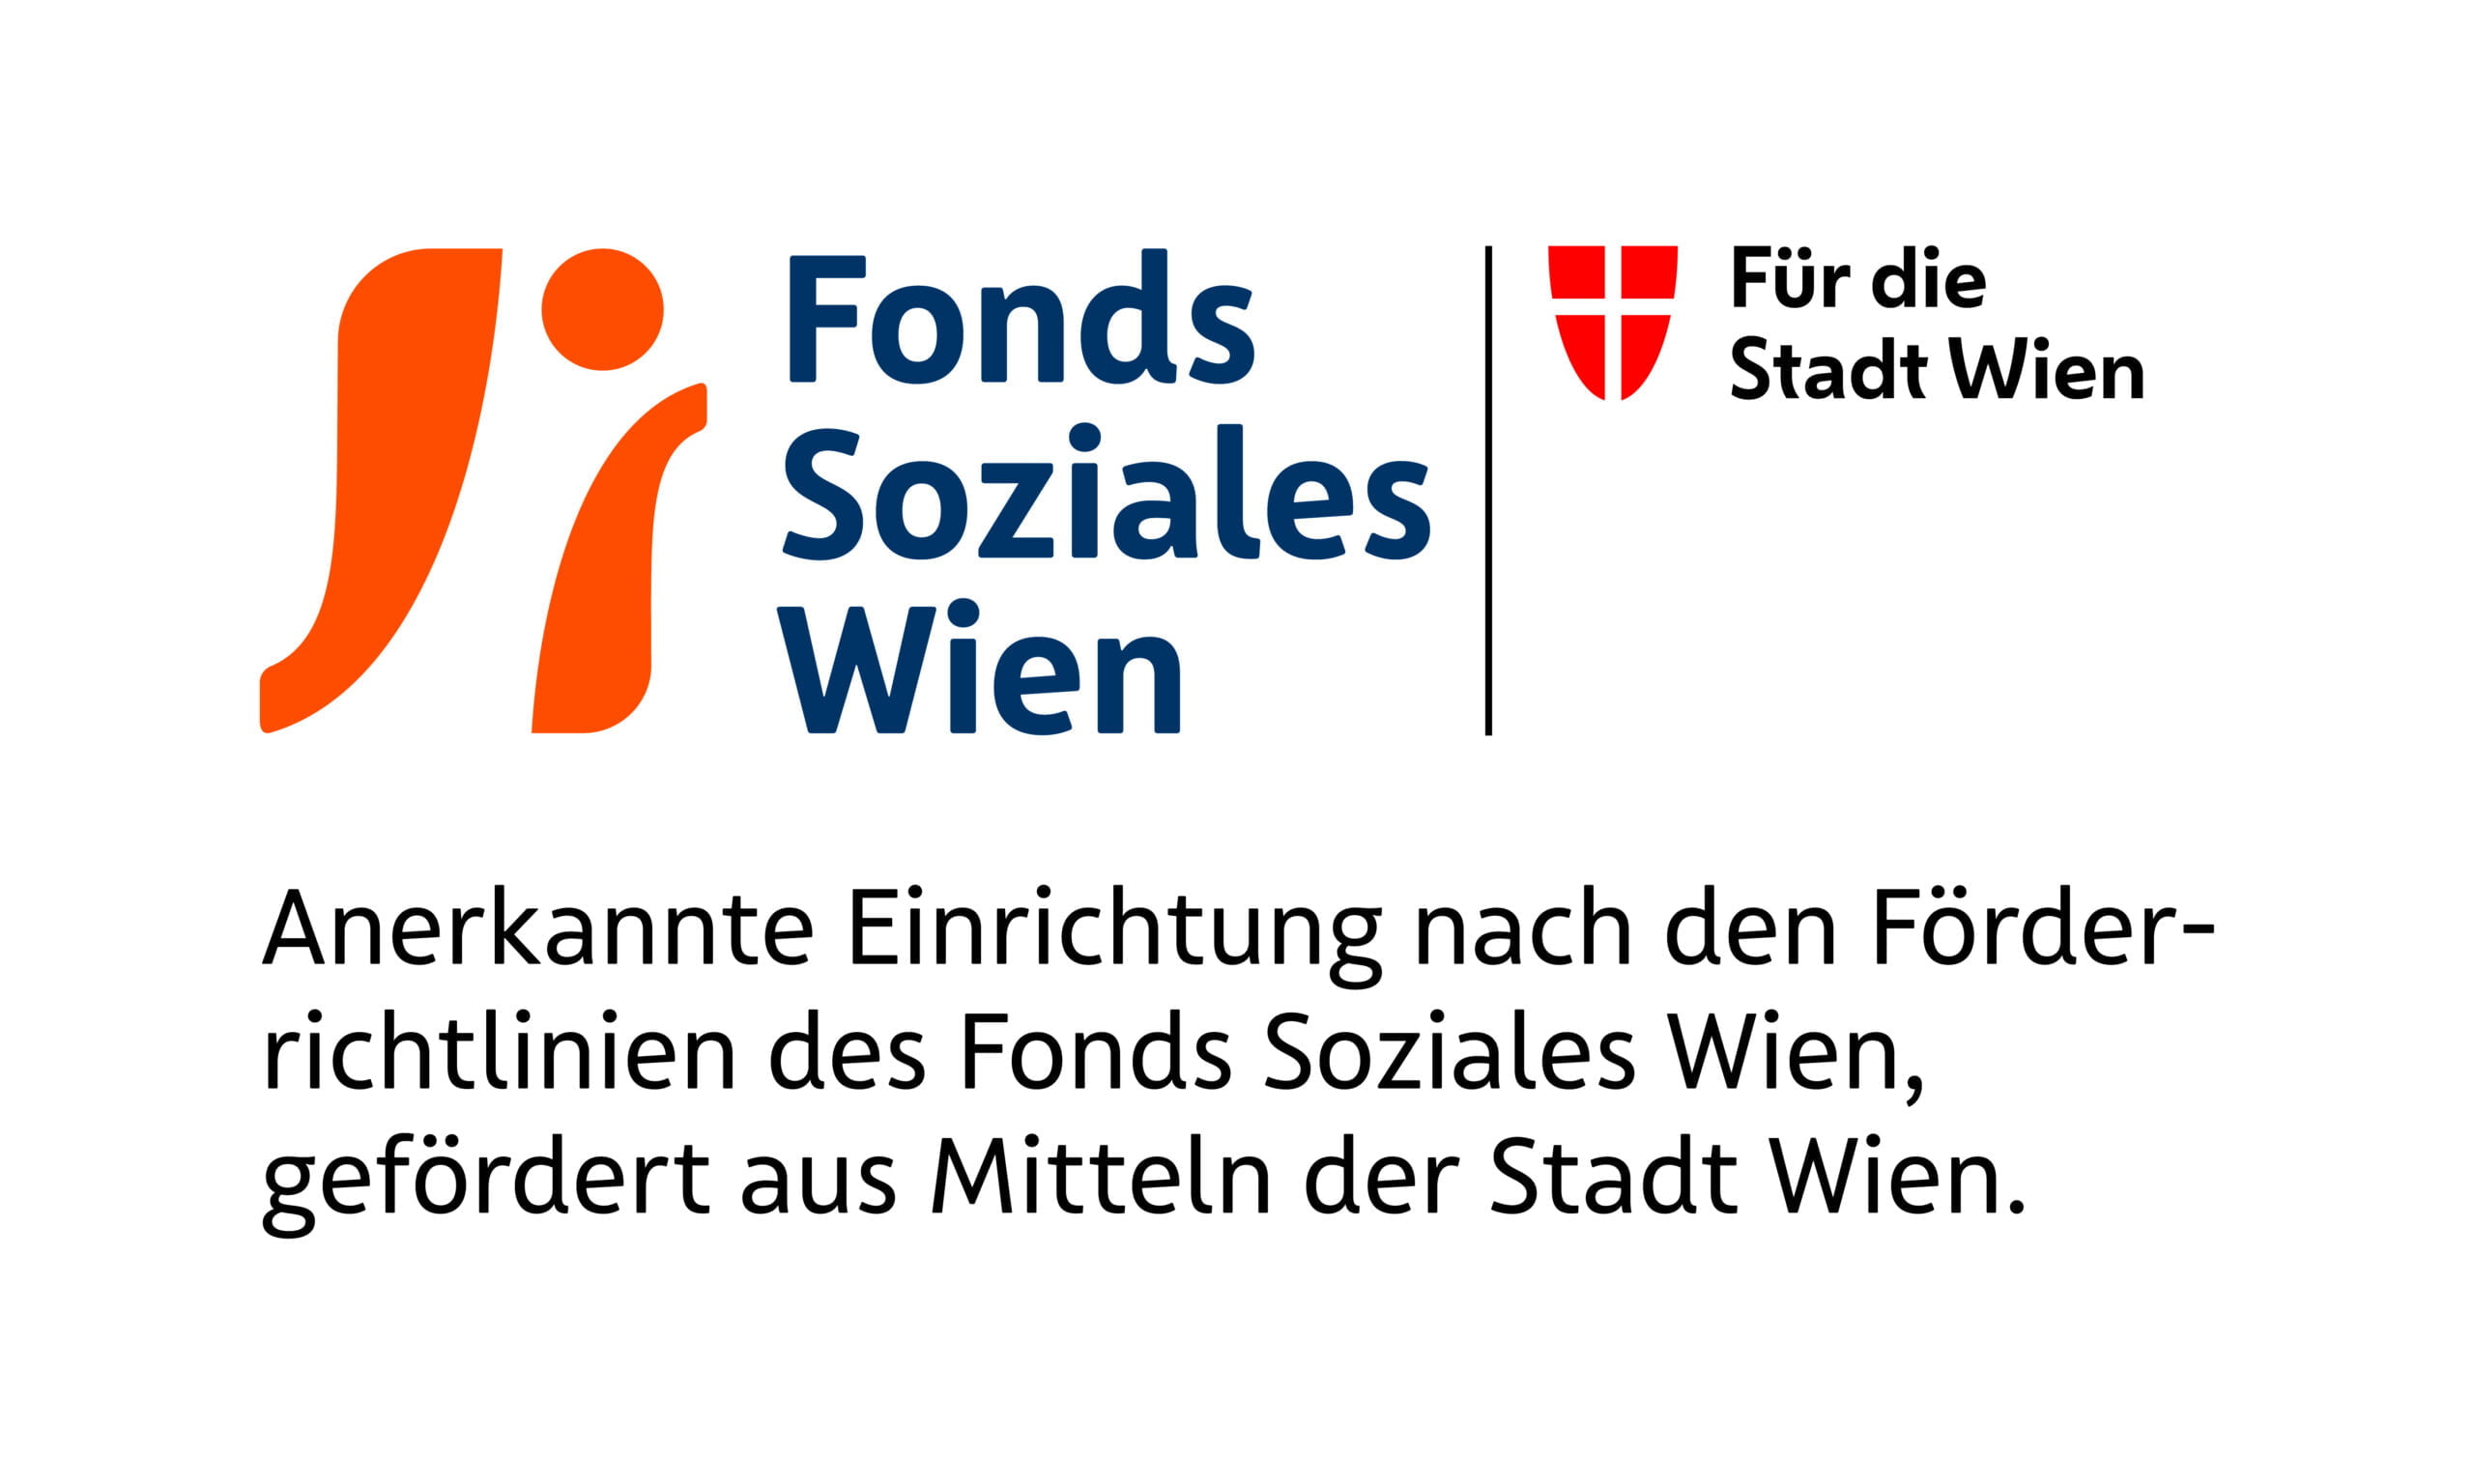 fsw-fonds-soziales-wien-logo-2